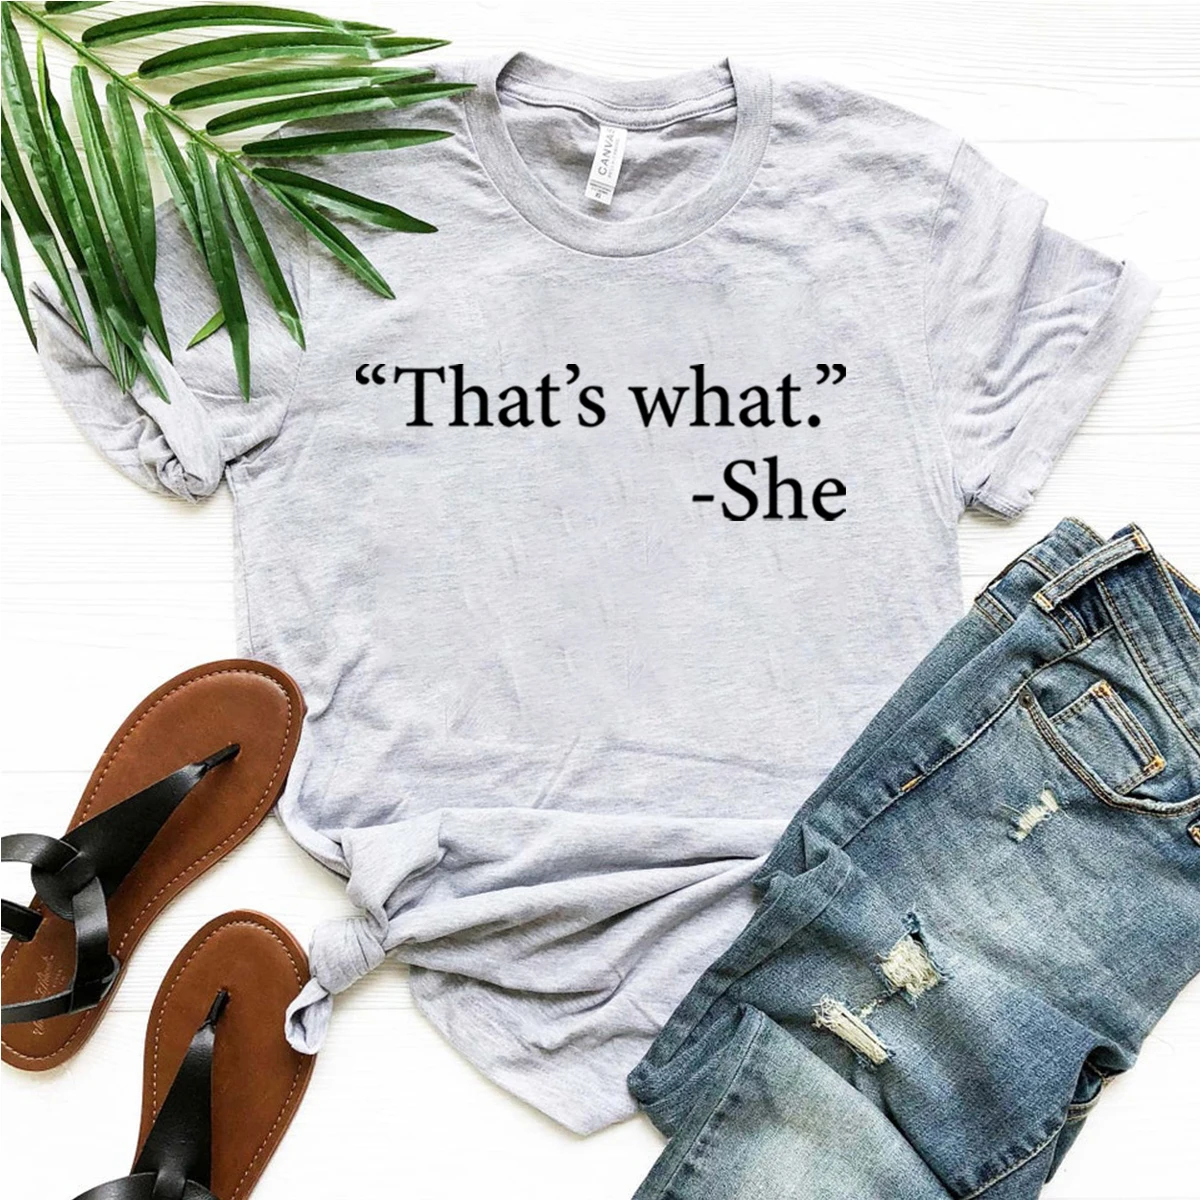 

Это то, что она сказала, футболка для женщин, забавная Женская футболка для офиса, подарок для нее